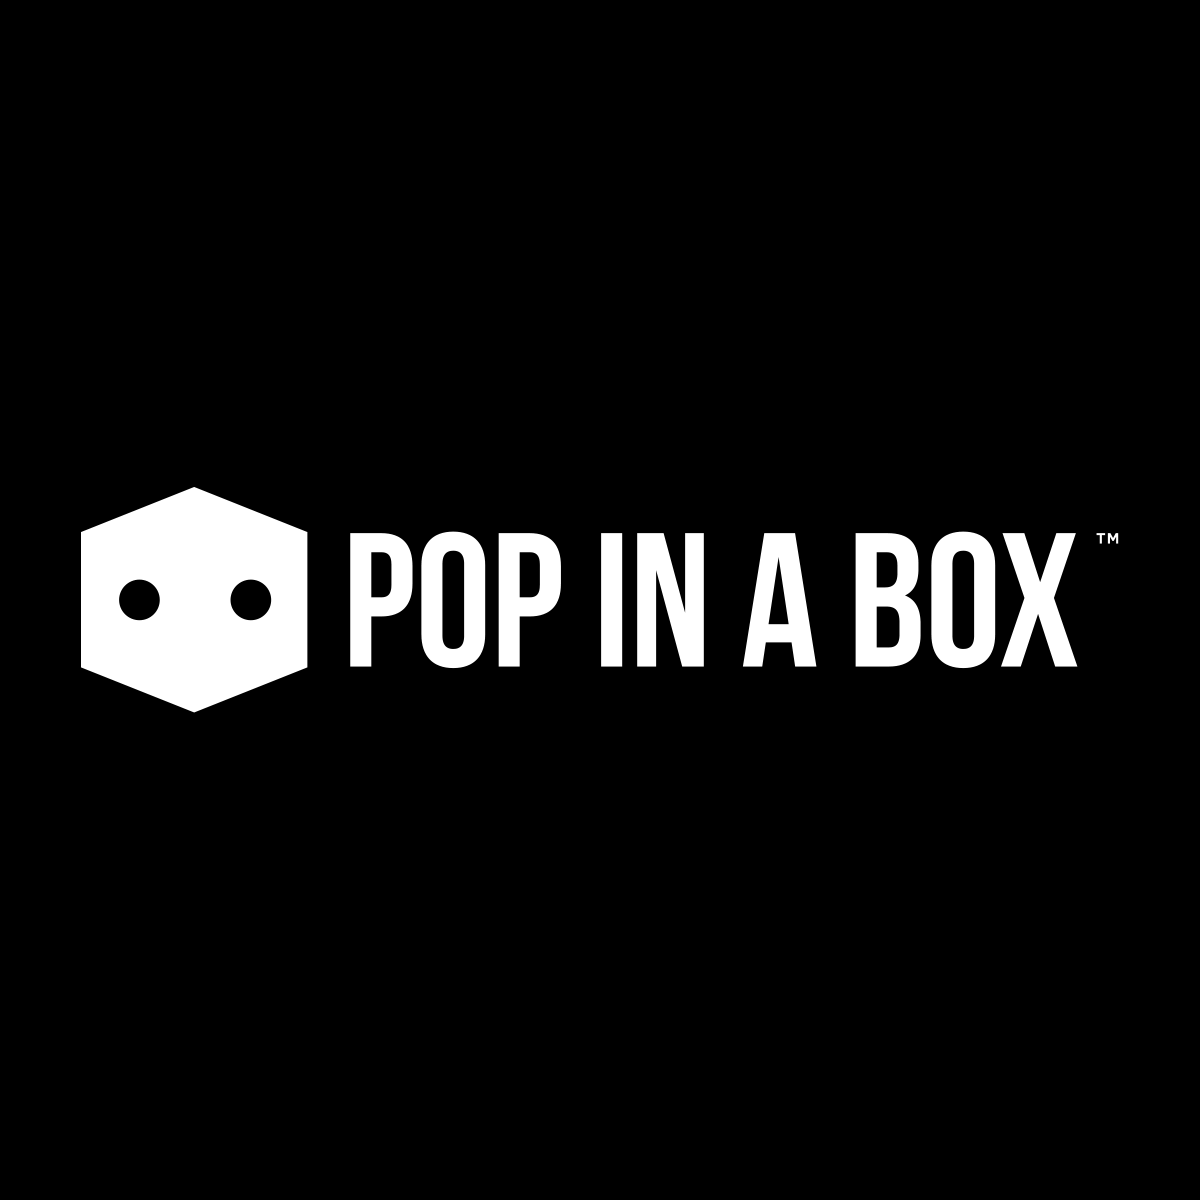 www.popinabox.com.au